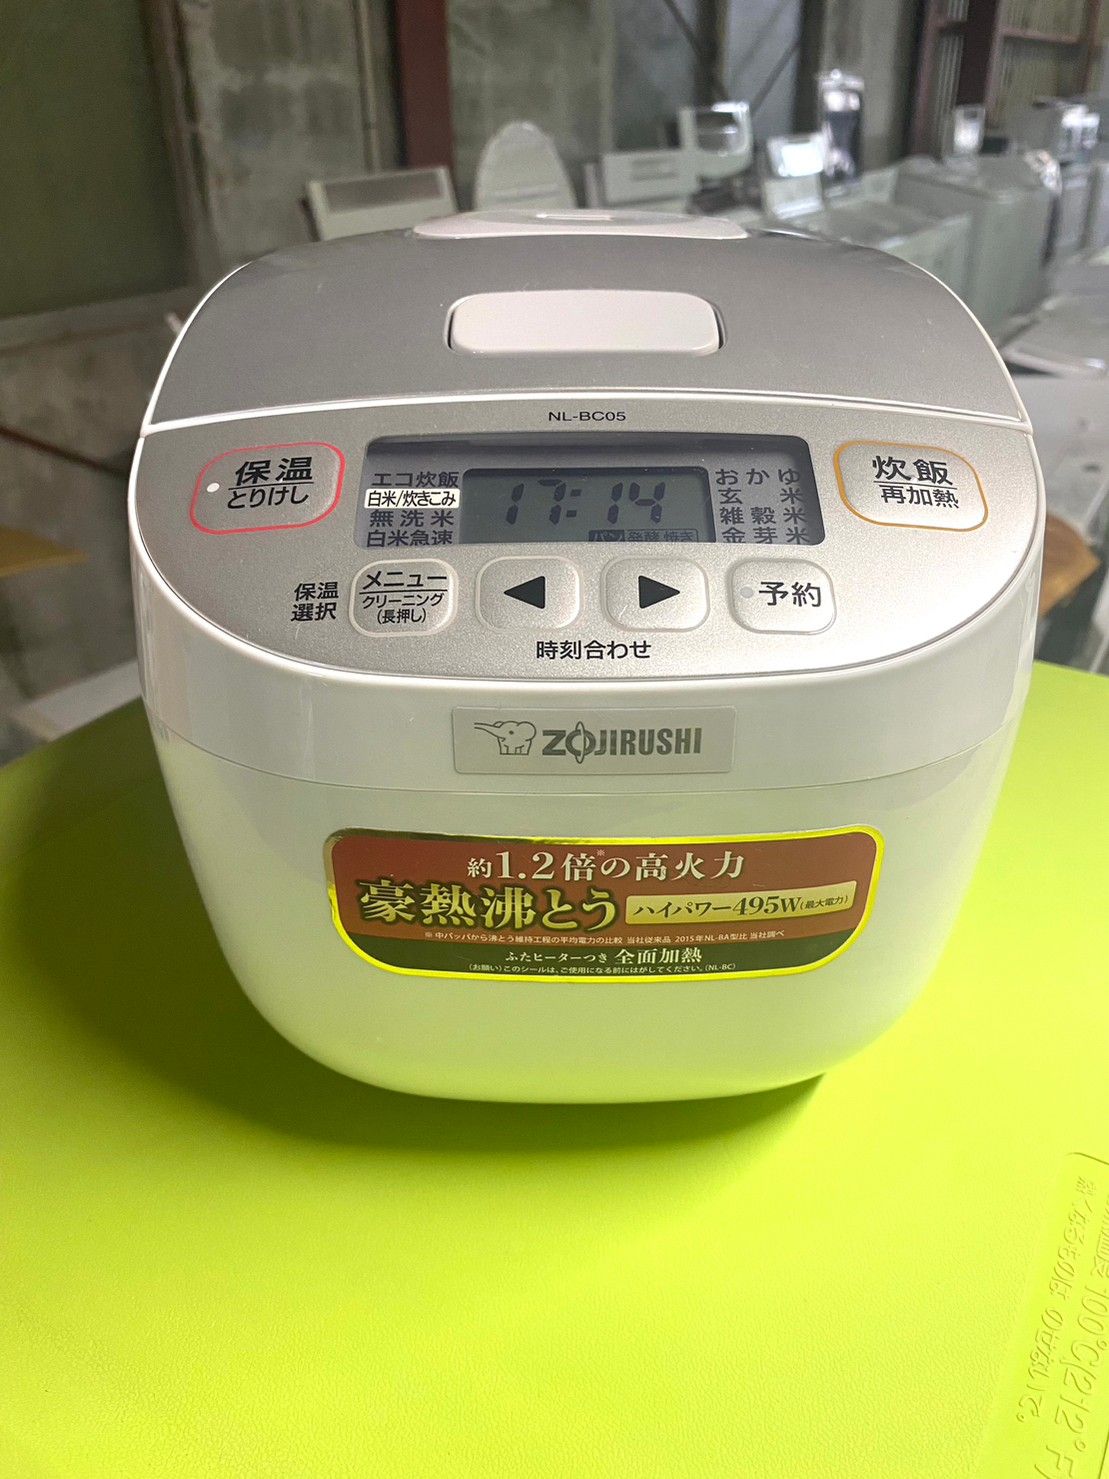 【最安価格(税込)】象印 マイコン炊飯ジャー(3合炊き) ホワイトZOJIRUSHI 極め炊き 炊飯器・餅つき機